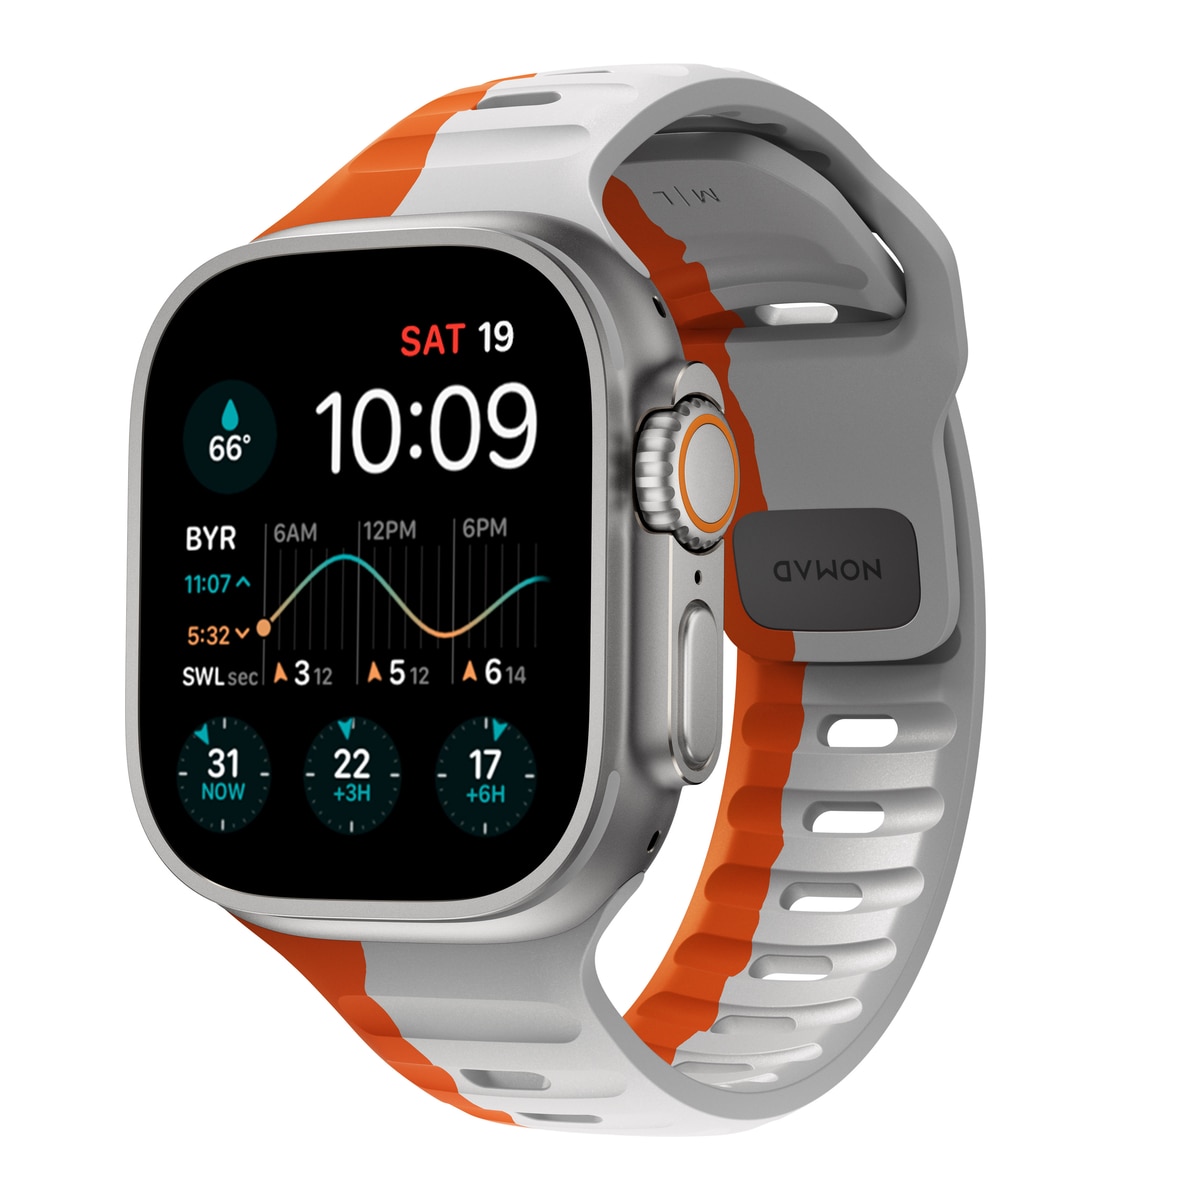 Apple Watch 44mm Armbänder & Schutzzubehör kaufen - PhoneLife